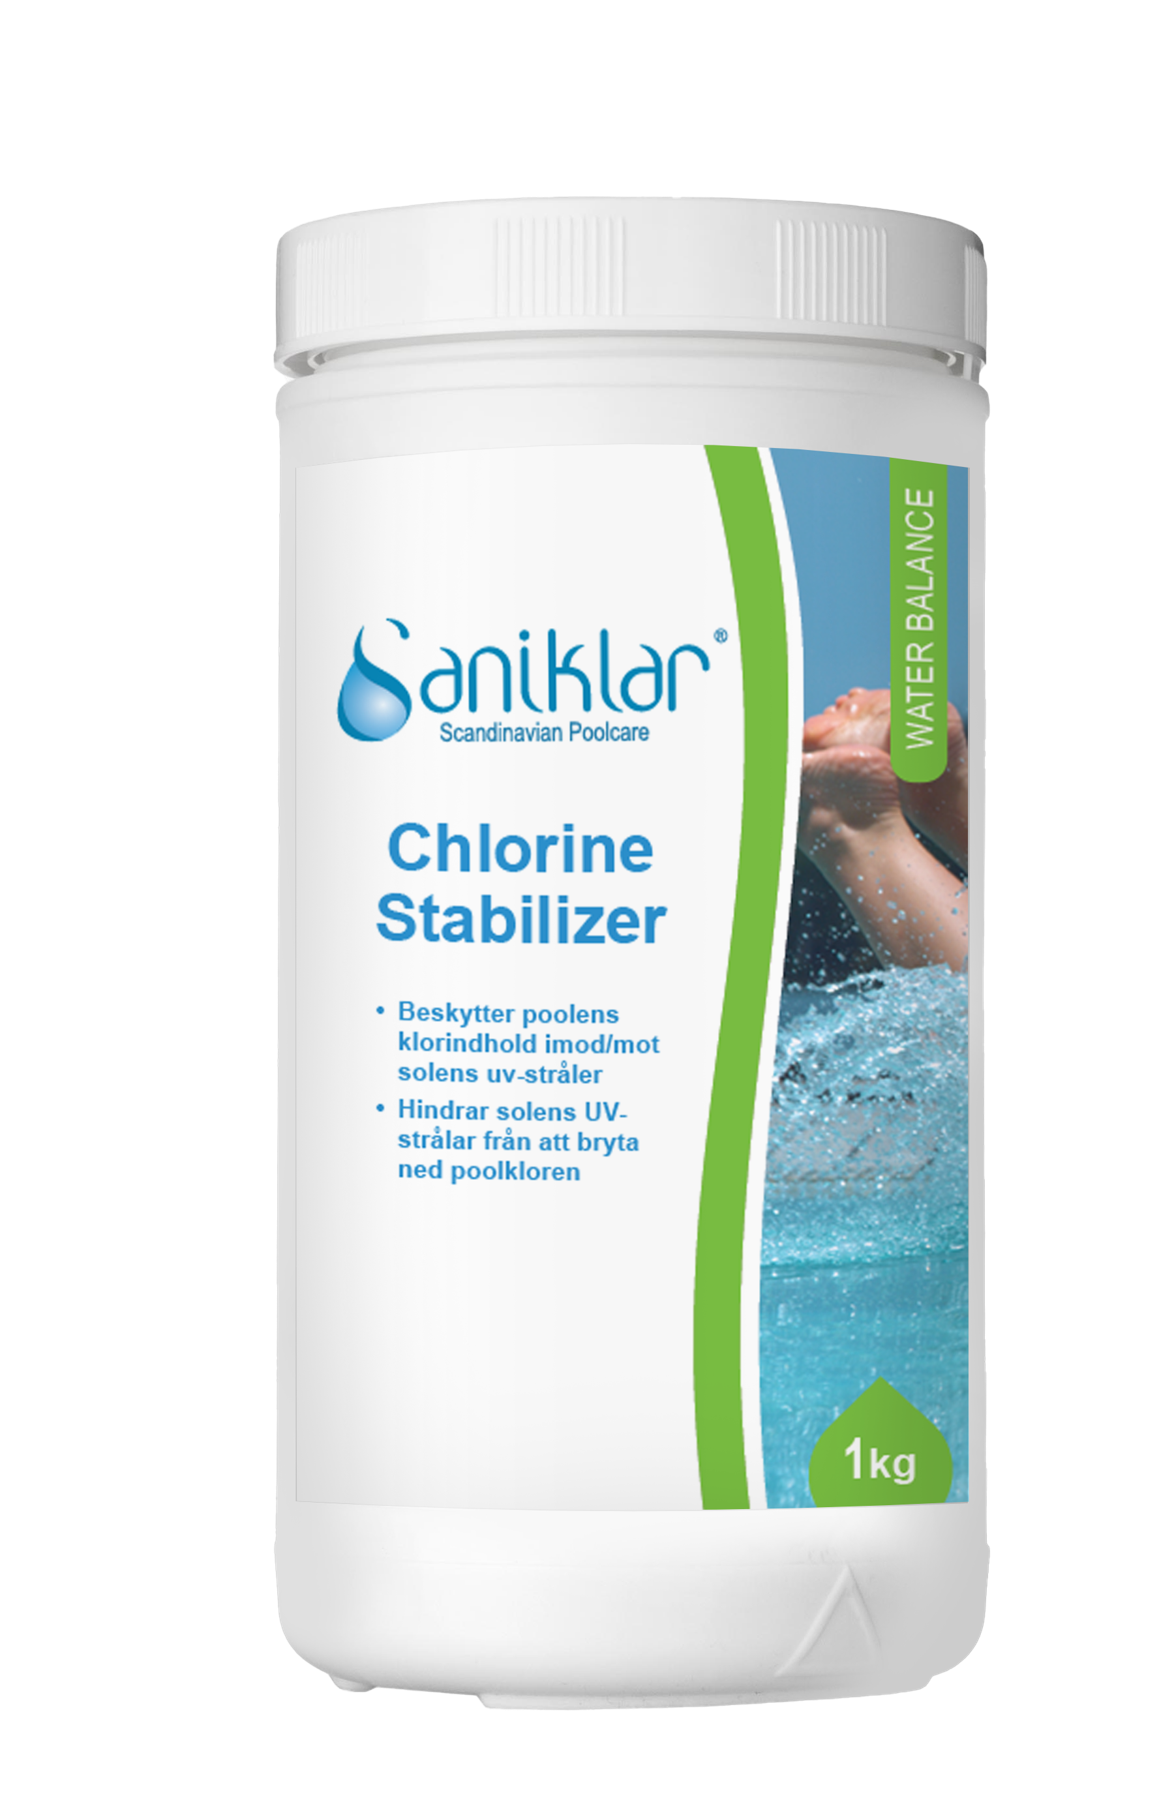 Saniklar Chlorine Stabilizer